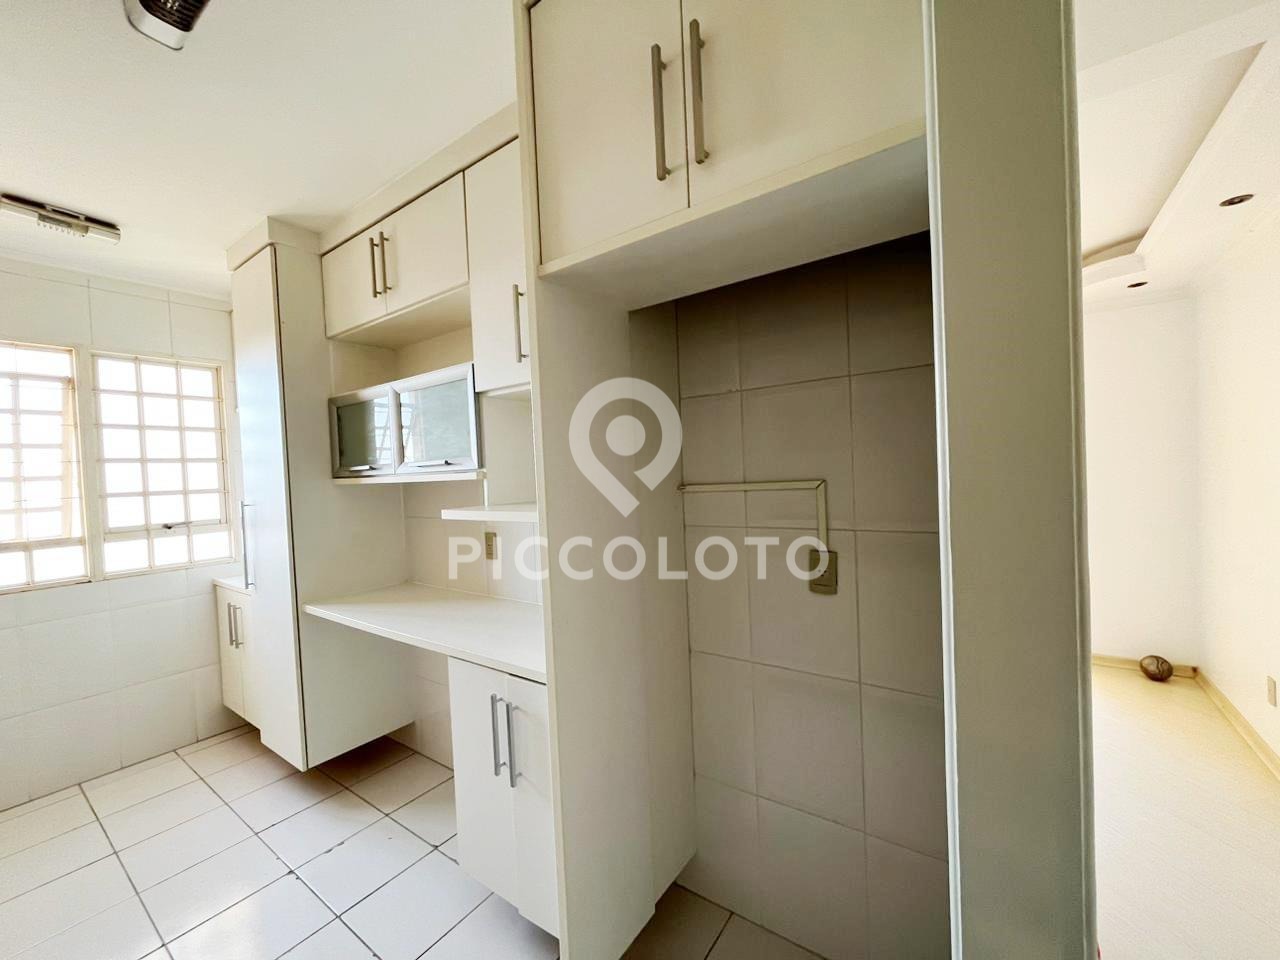 Piccoloto -Apartamento à venda no Chácara São Martinho em Campinas